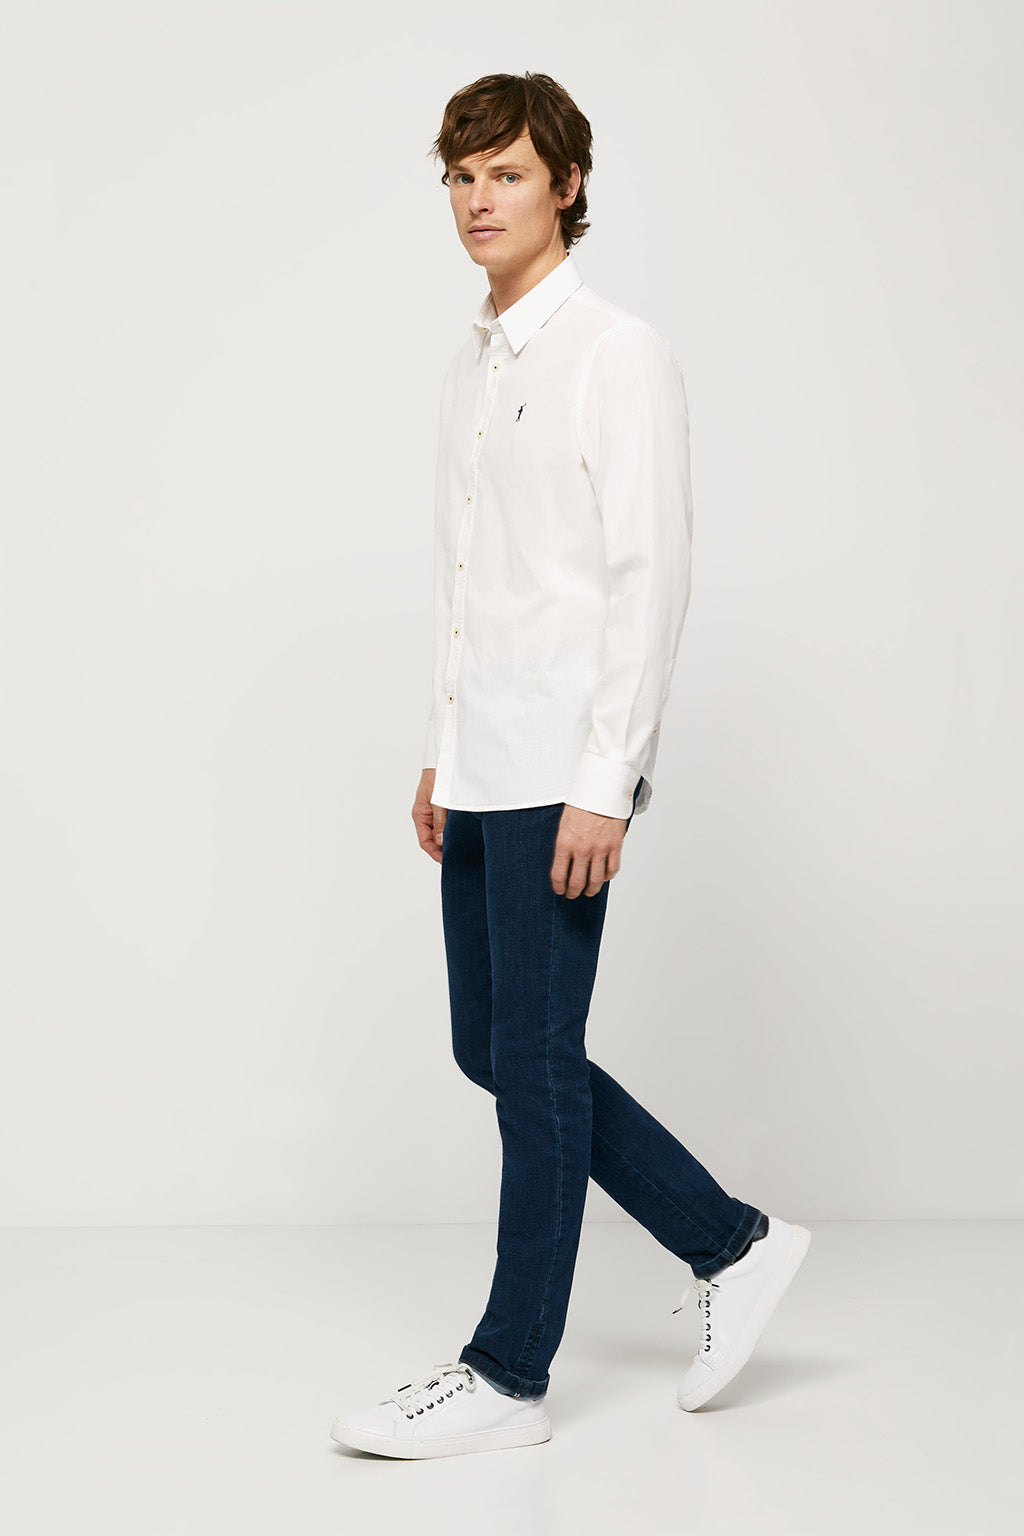 Camisa slim fit blanca con logo bordado | HOMBRE  | POLO CLUB